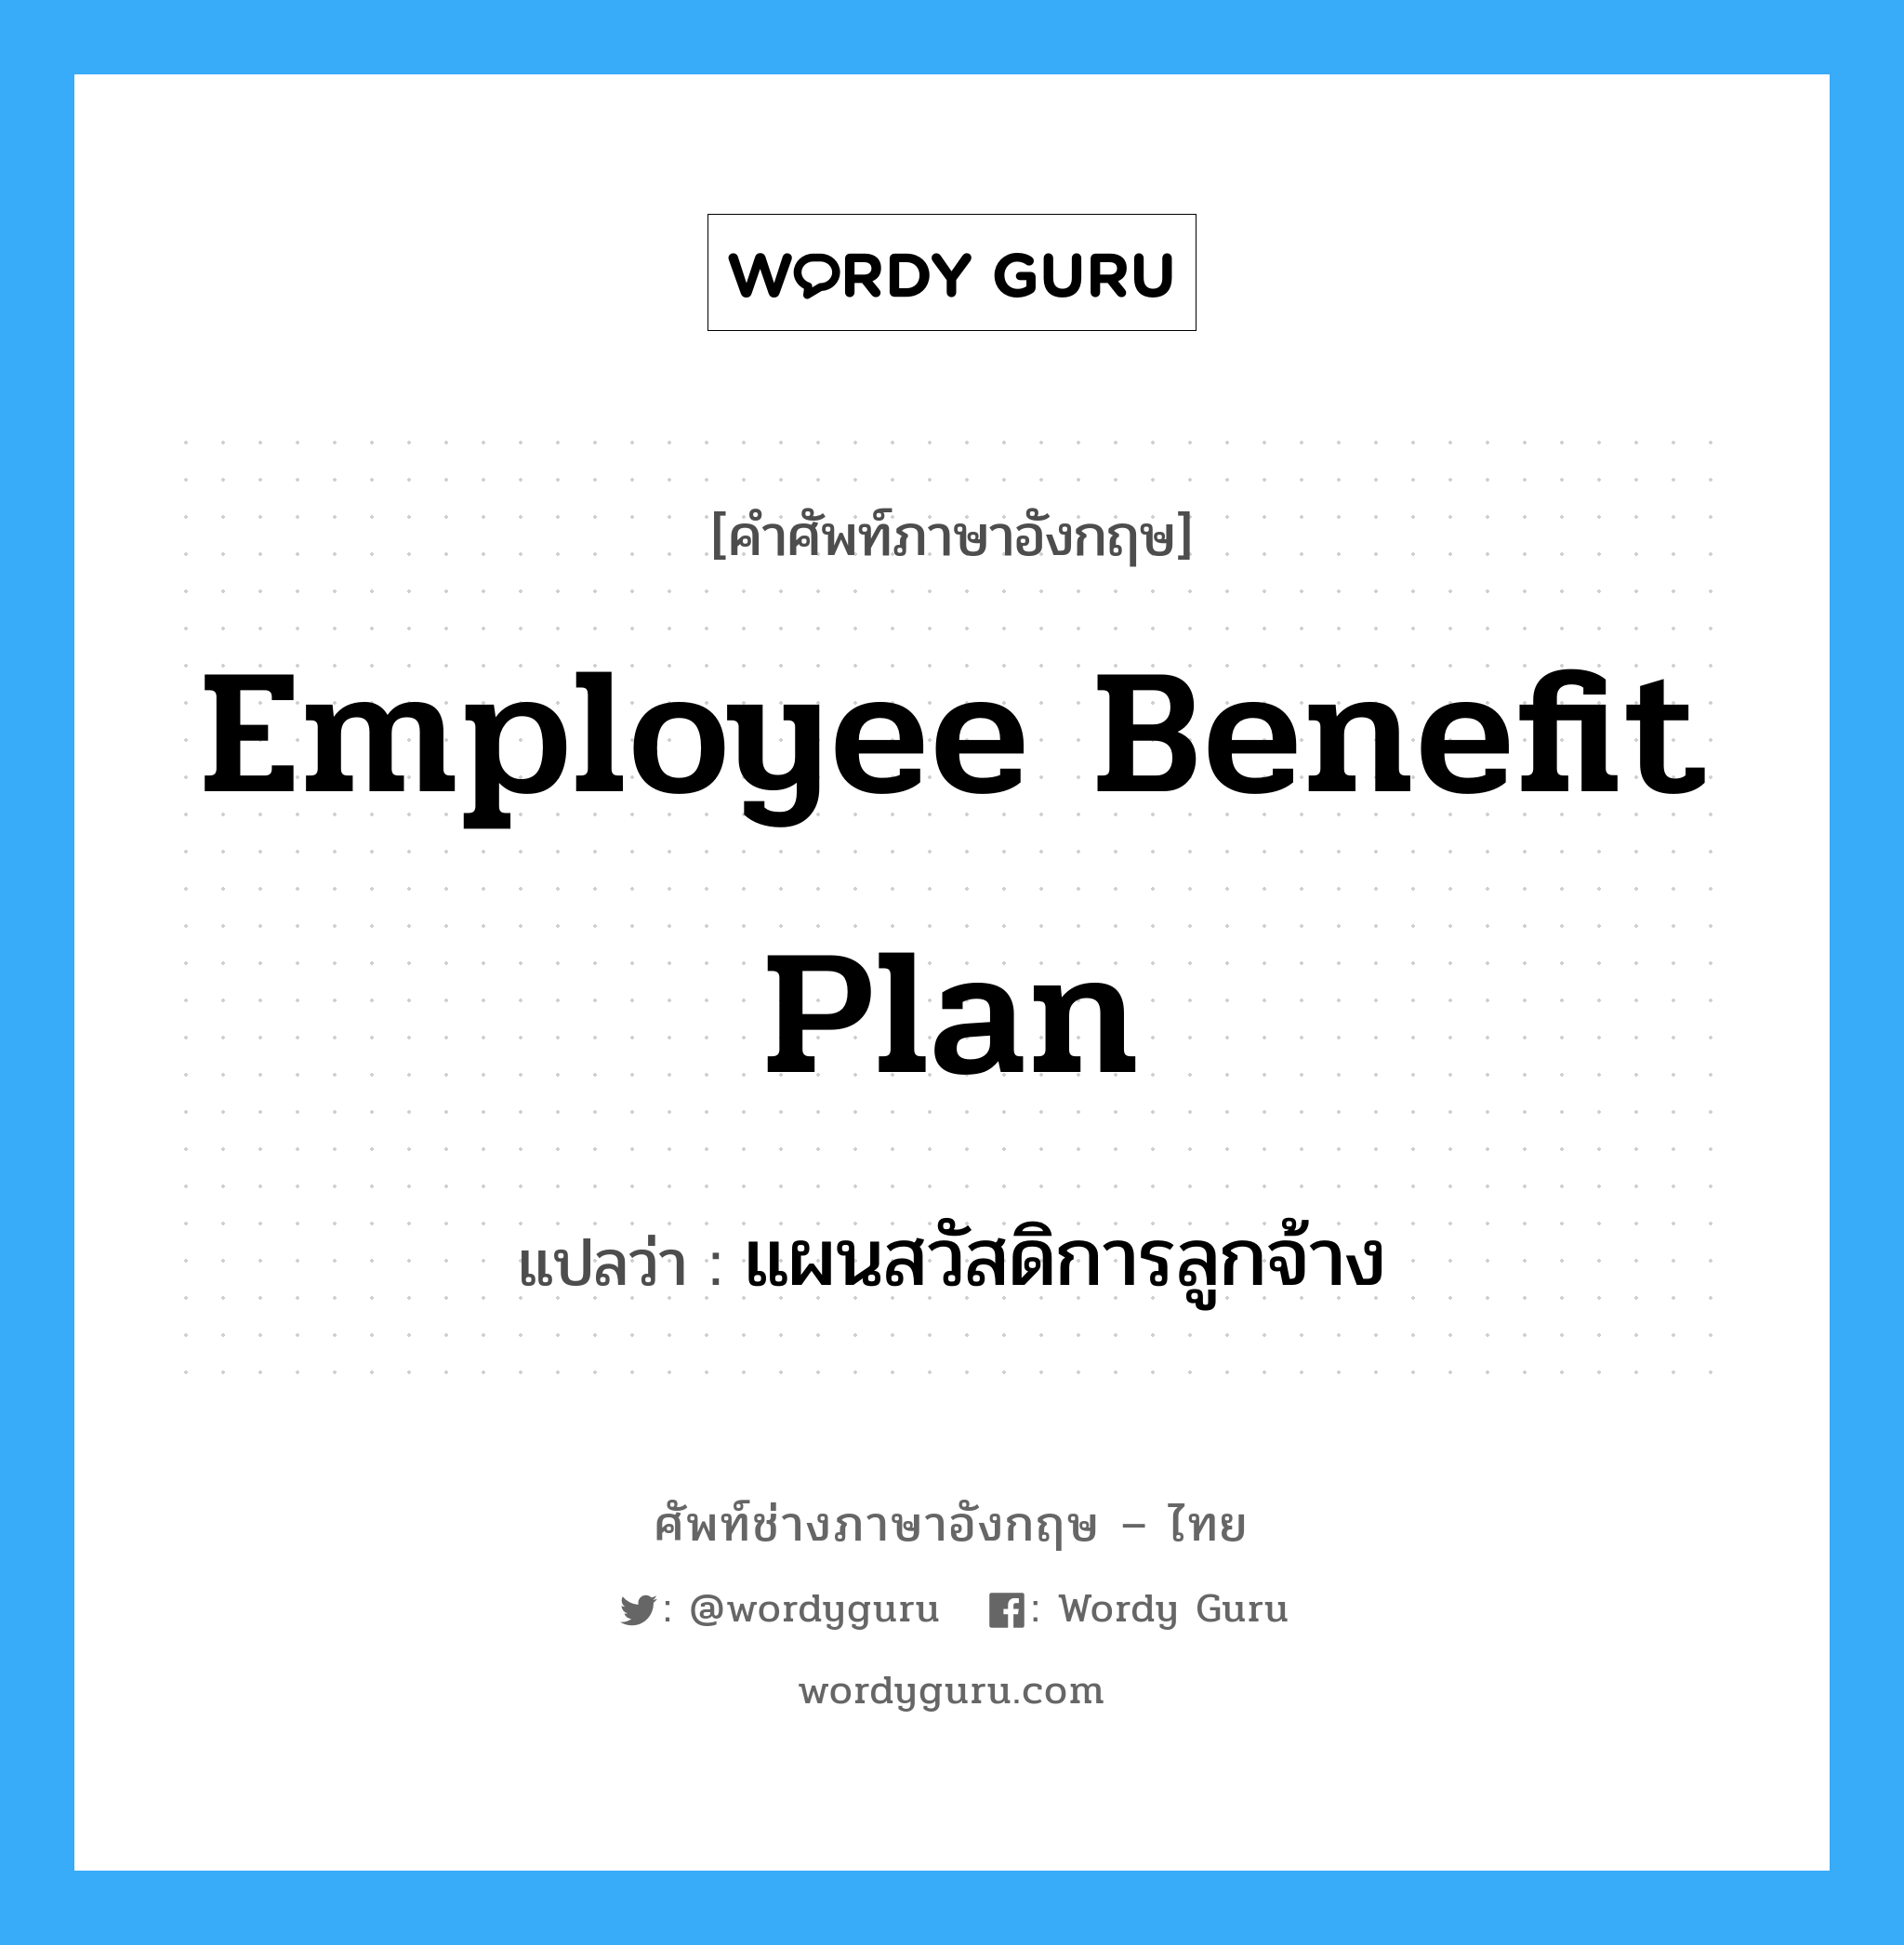 แผนสวัสดิการลูกจ้าง ภาษาอังกฤษ?, คำศัพท์ช่างภาษาอังกฤษ - ไทย แผนสวัสดิการลูกจ้าง คำศัพท์ภาษาอังกฤษ แผนสวัสดิการลูกจ้าง แปลว่า Employee Benefit Plan